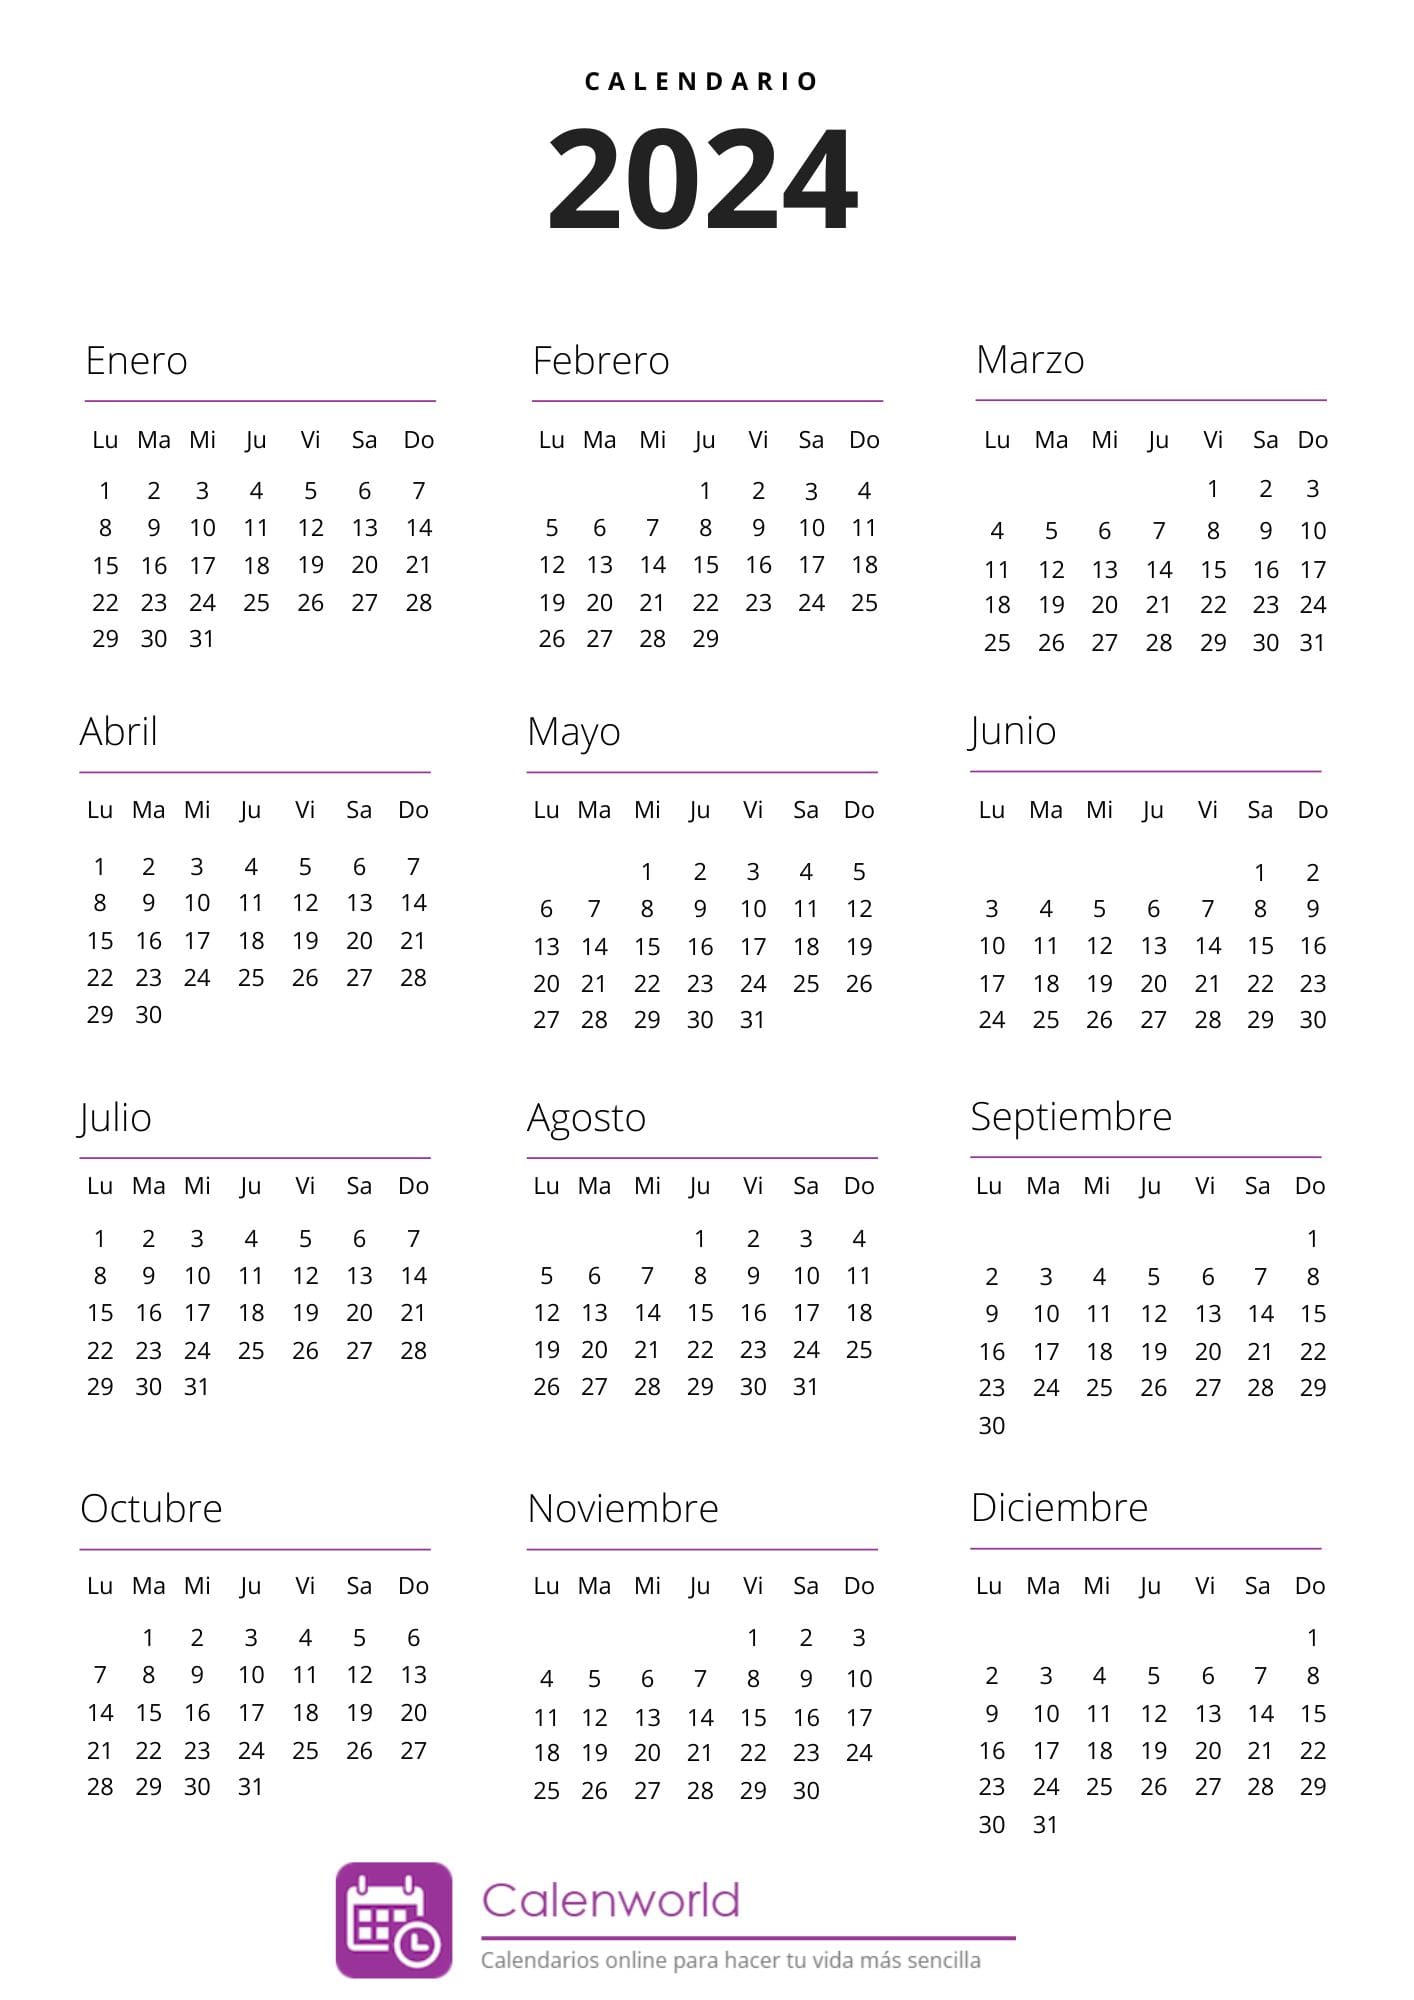 Calendario de almanaque 2024